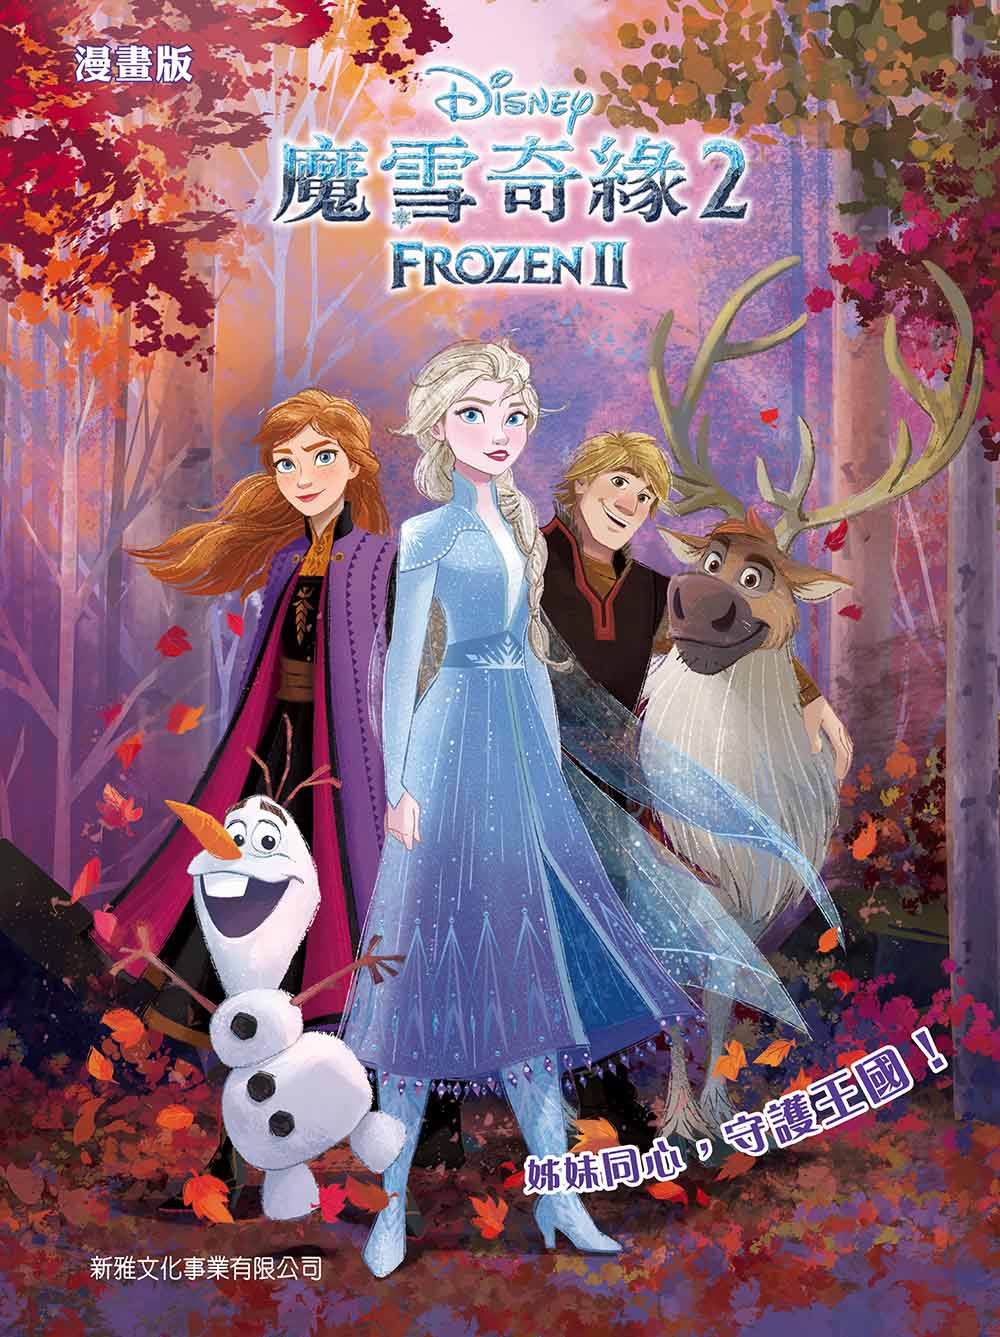 Frozen 2 (Graphic Novel) • 魔雪奇緣2 (漫畫版)